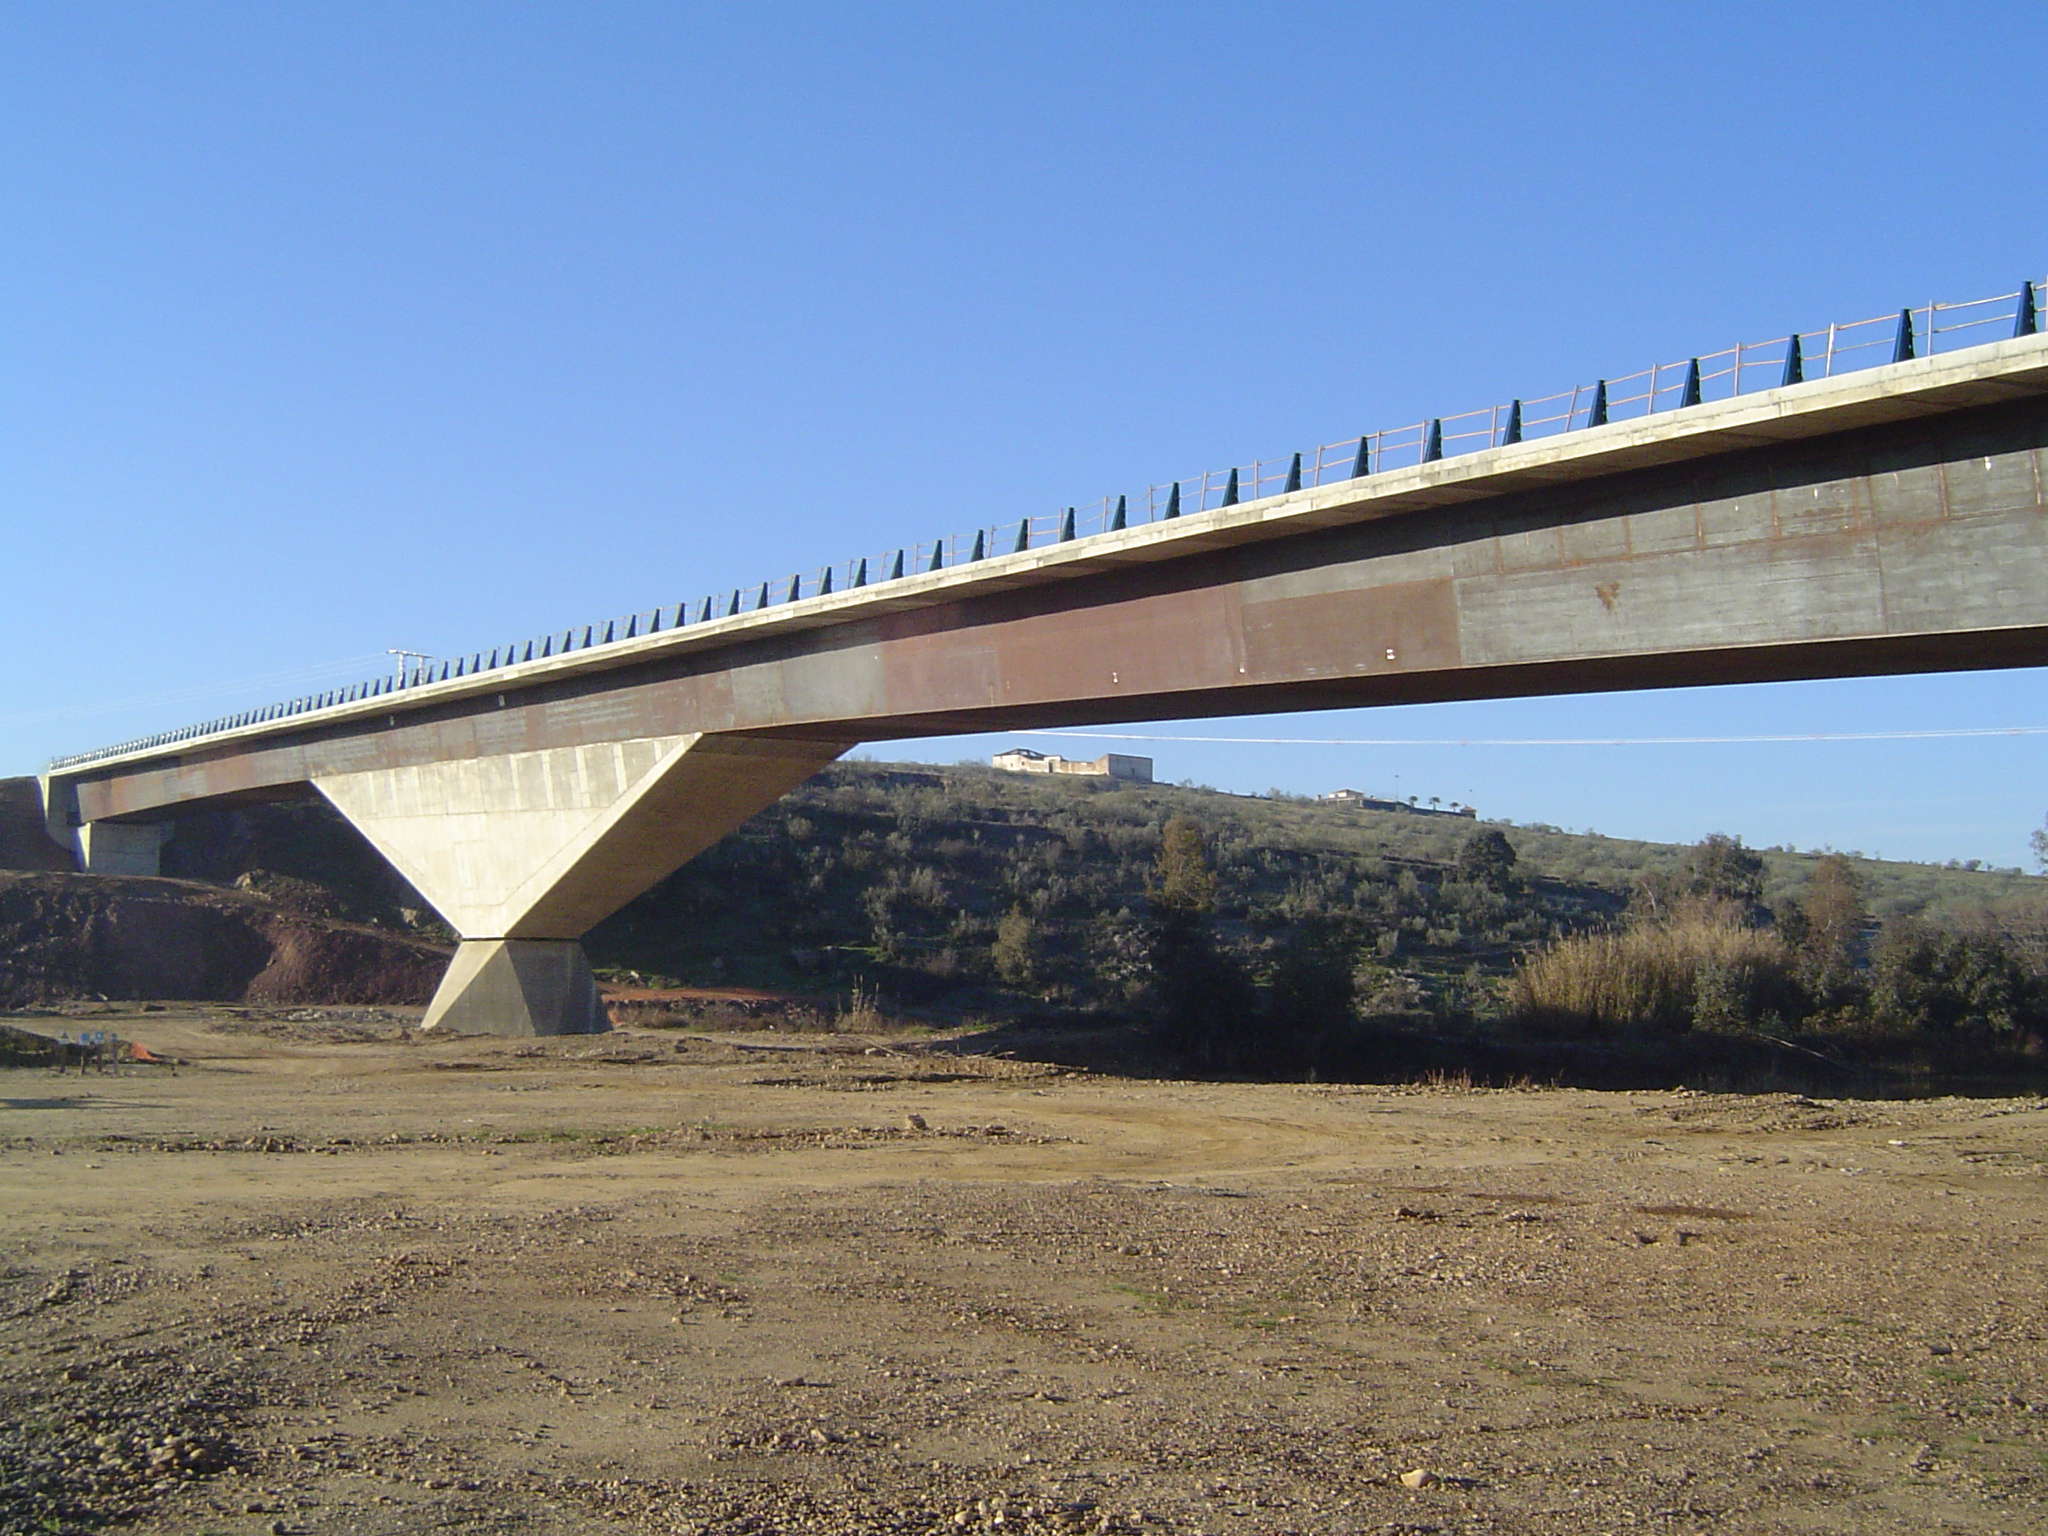 Bridge over river "Guadiana"